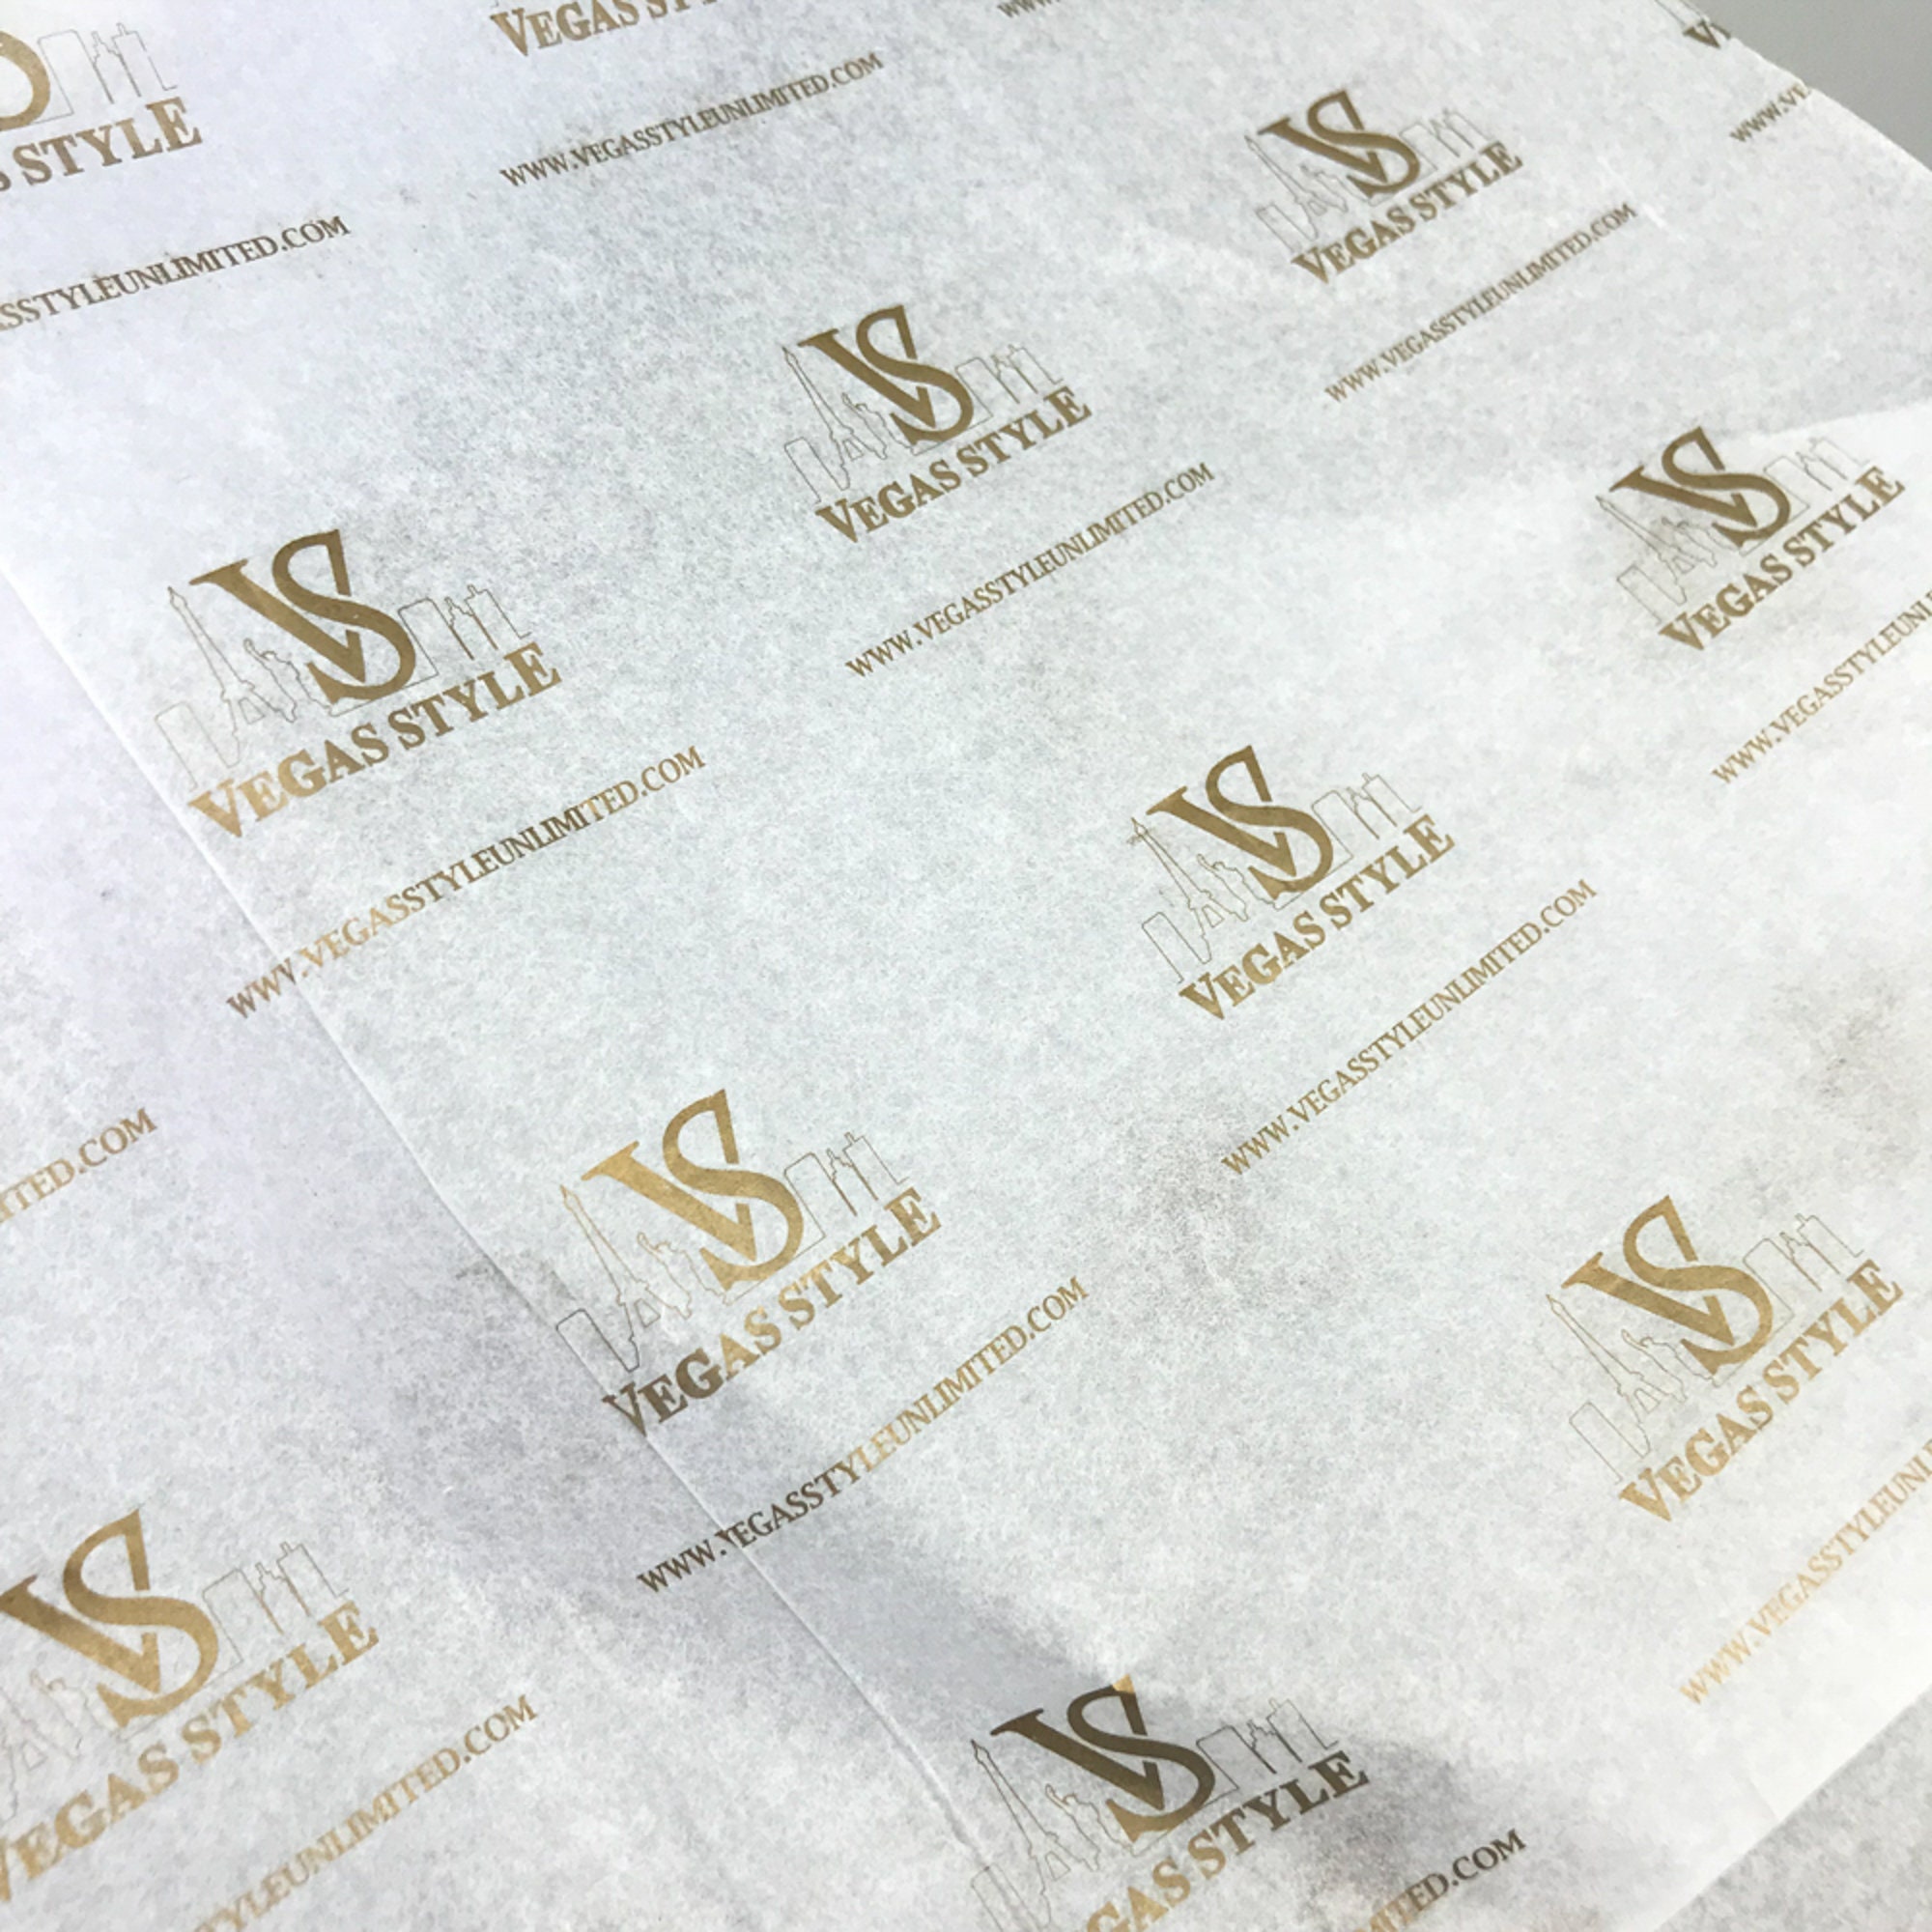 Branded Tissue Paper, Custom Tissue Paper, Printed Tissue Paper, Tissue  Paper With Logo, Packaging Materials, Branded Packaging Items